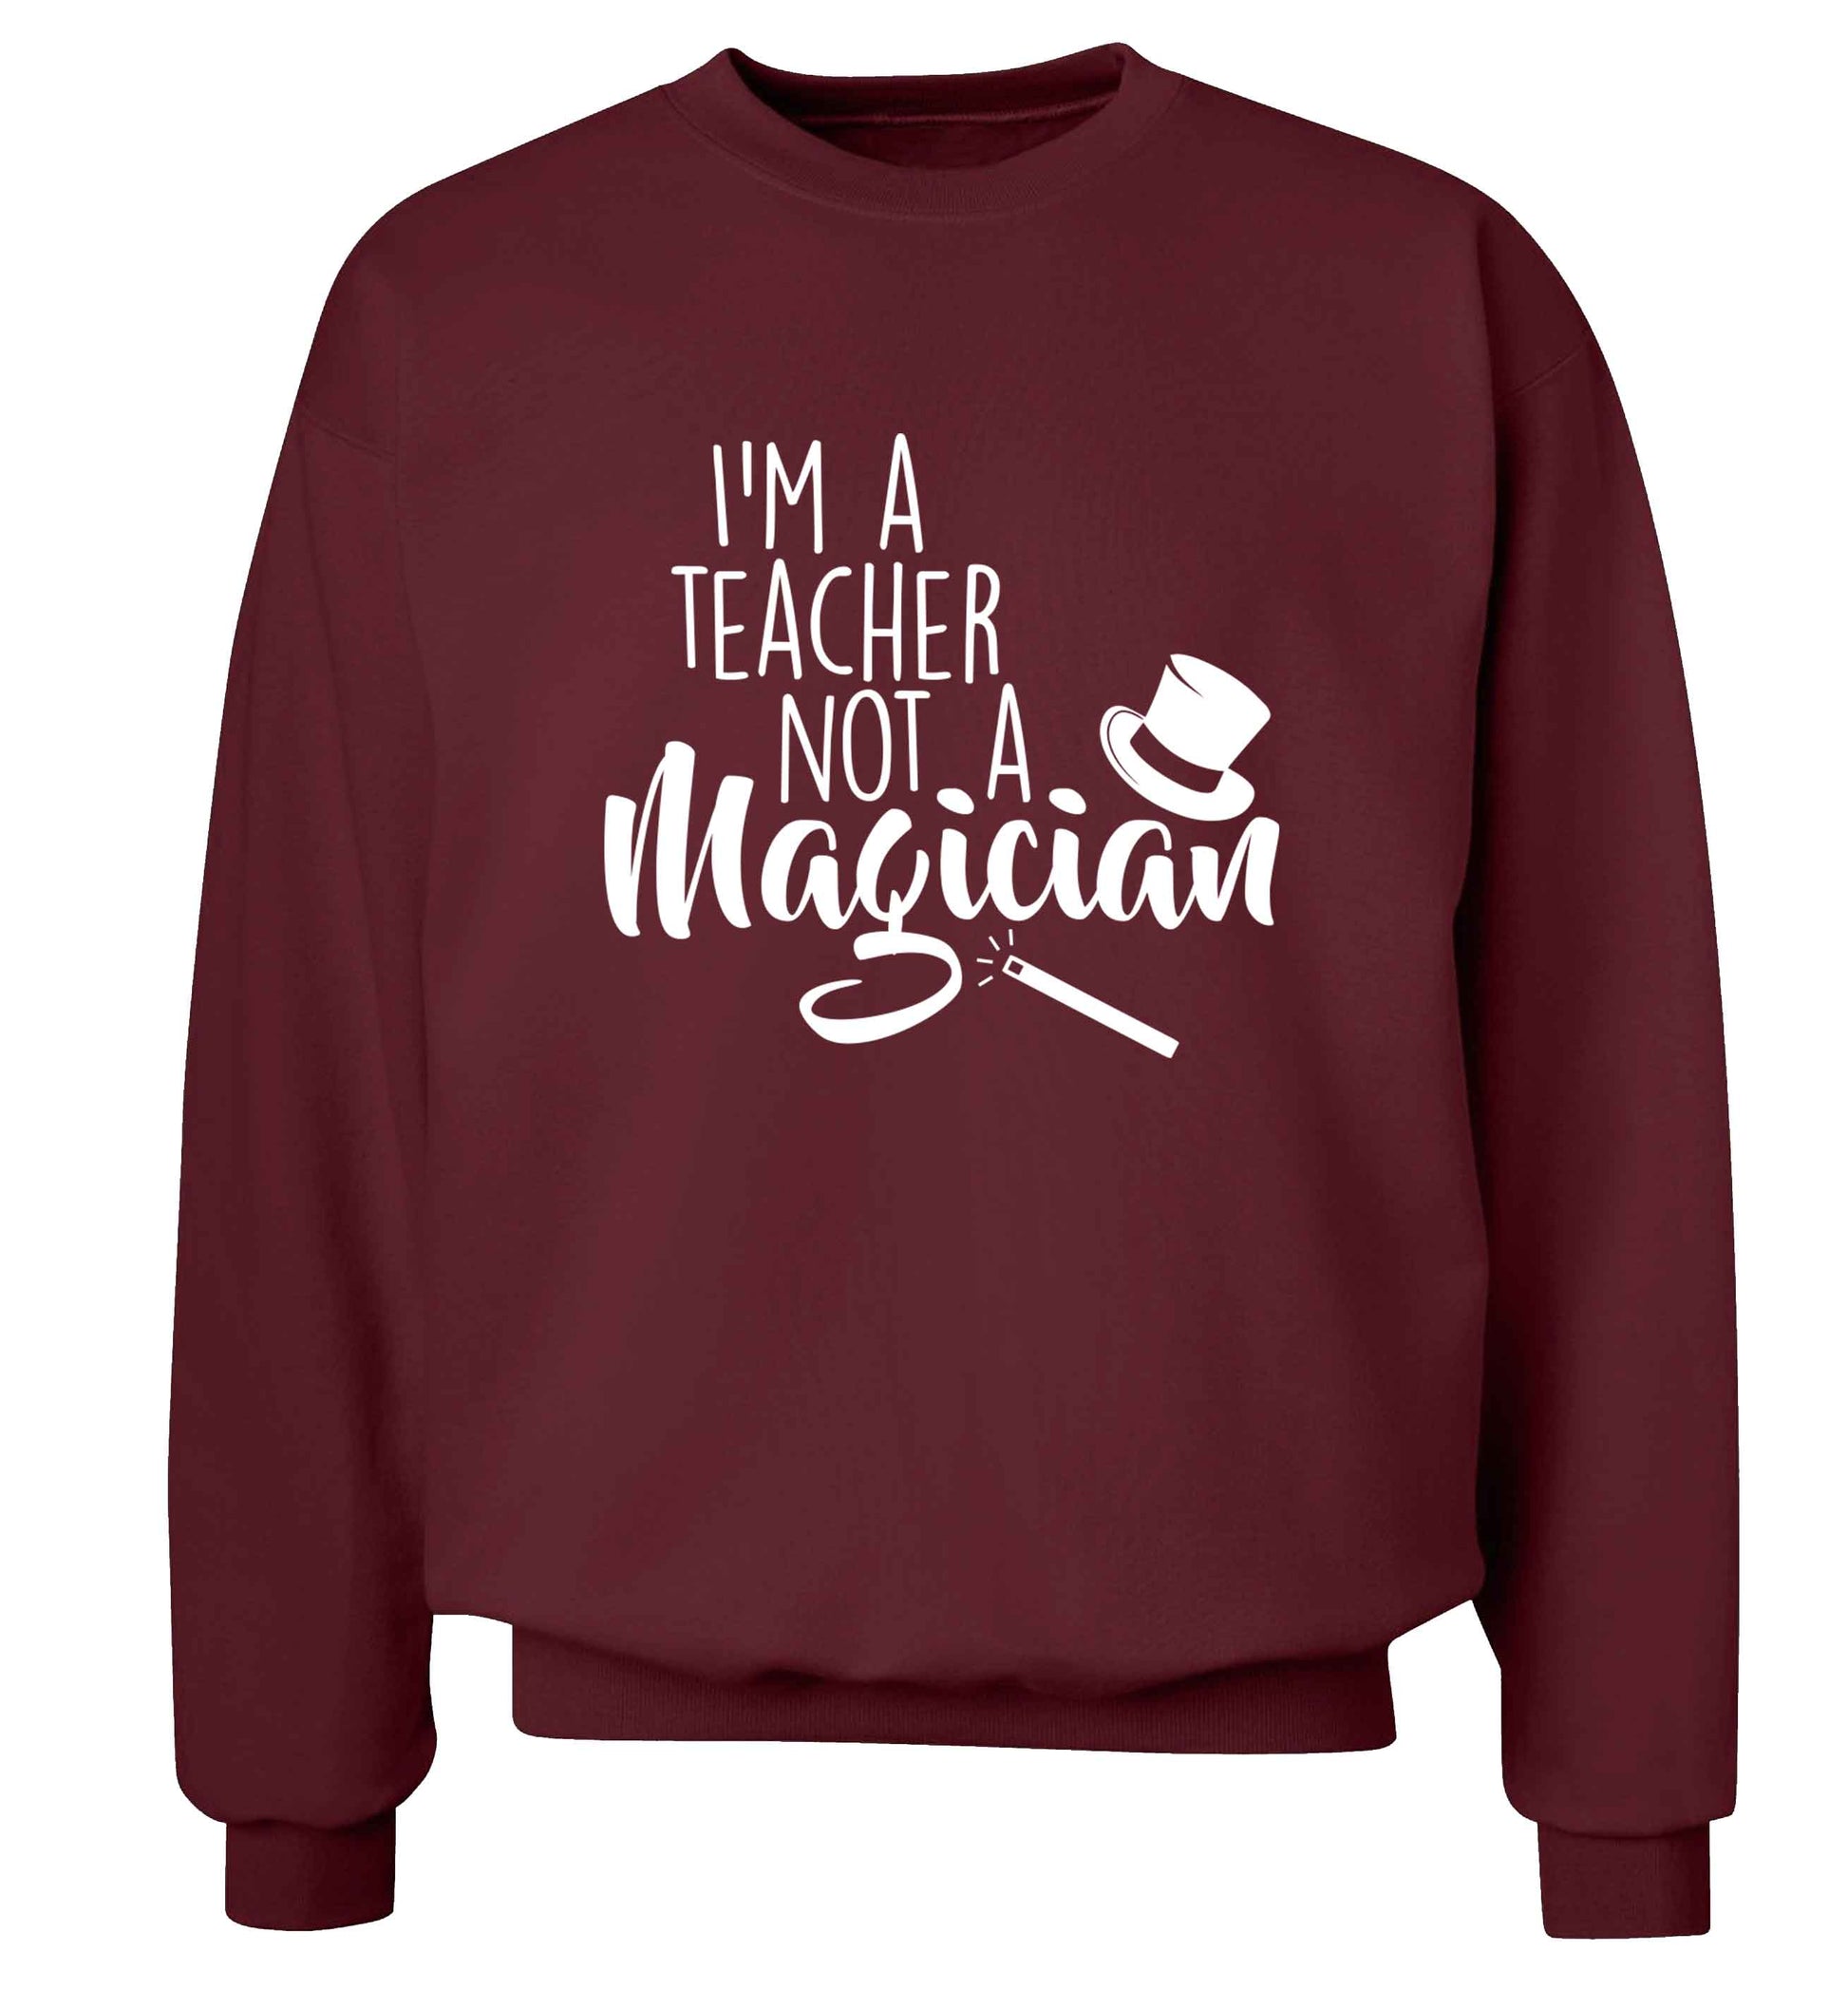 I'm a teacher not a magician adult's unisex maroon sweater 2XL